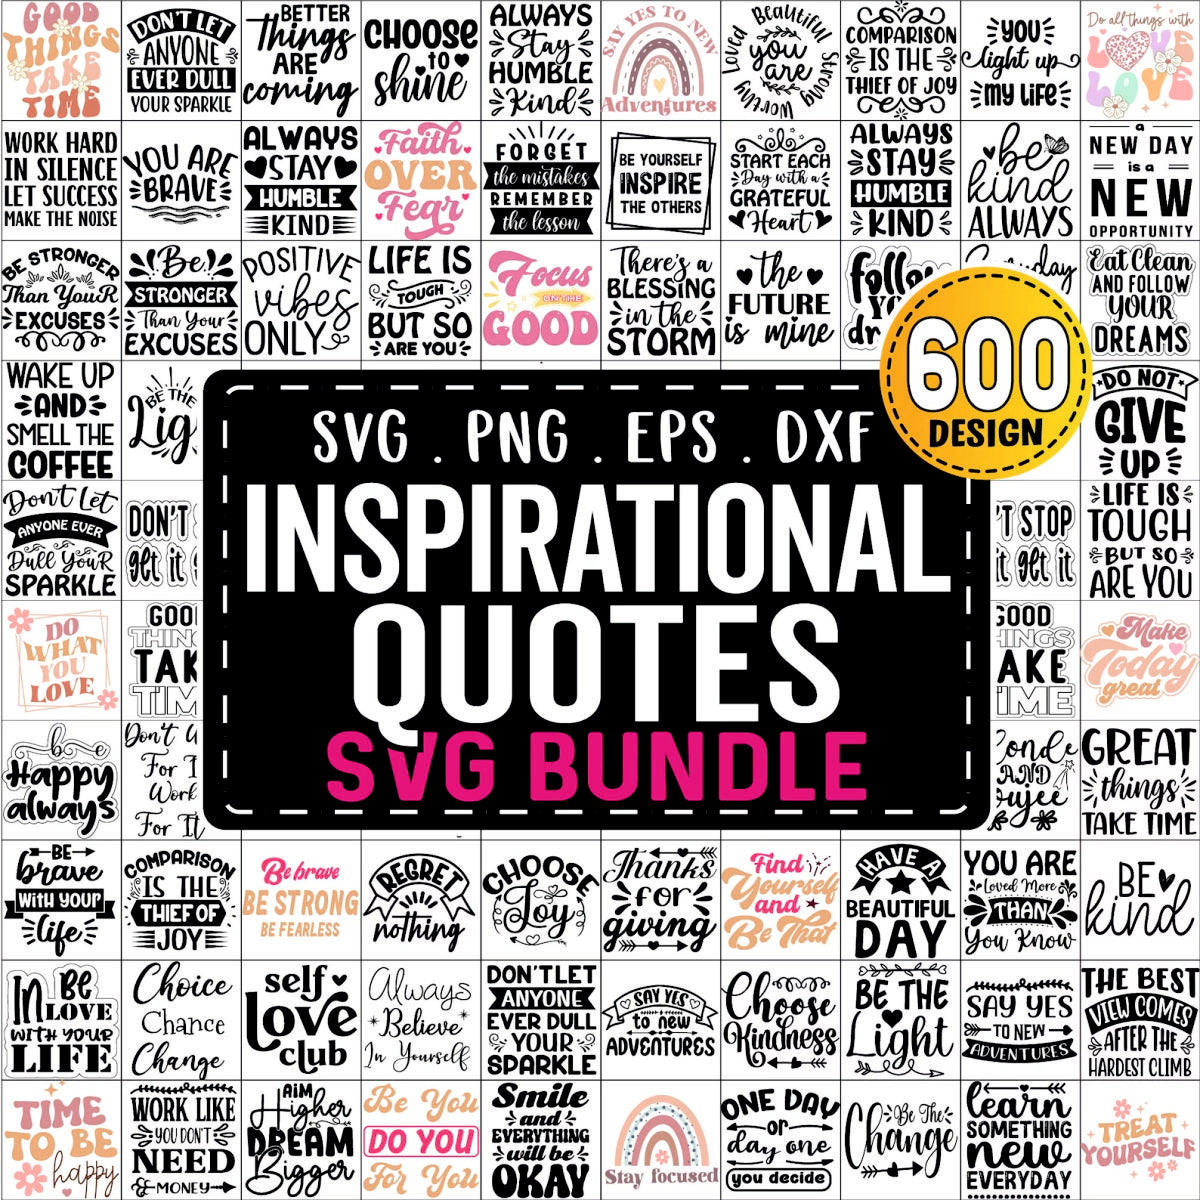 All Files in Shop Svg, Mega Svg Bundle, Entire Shop Svg Bundle, T-shirt Designs Svg, Commercial Use SVG Files for Cricut, Instant Download File